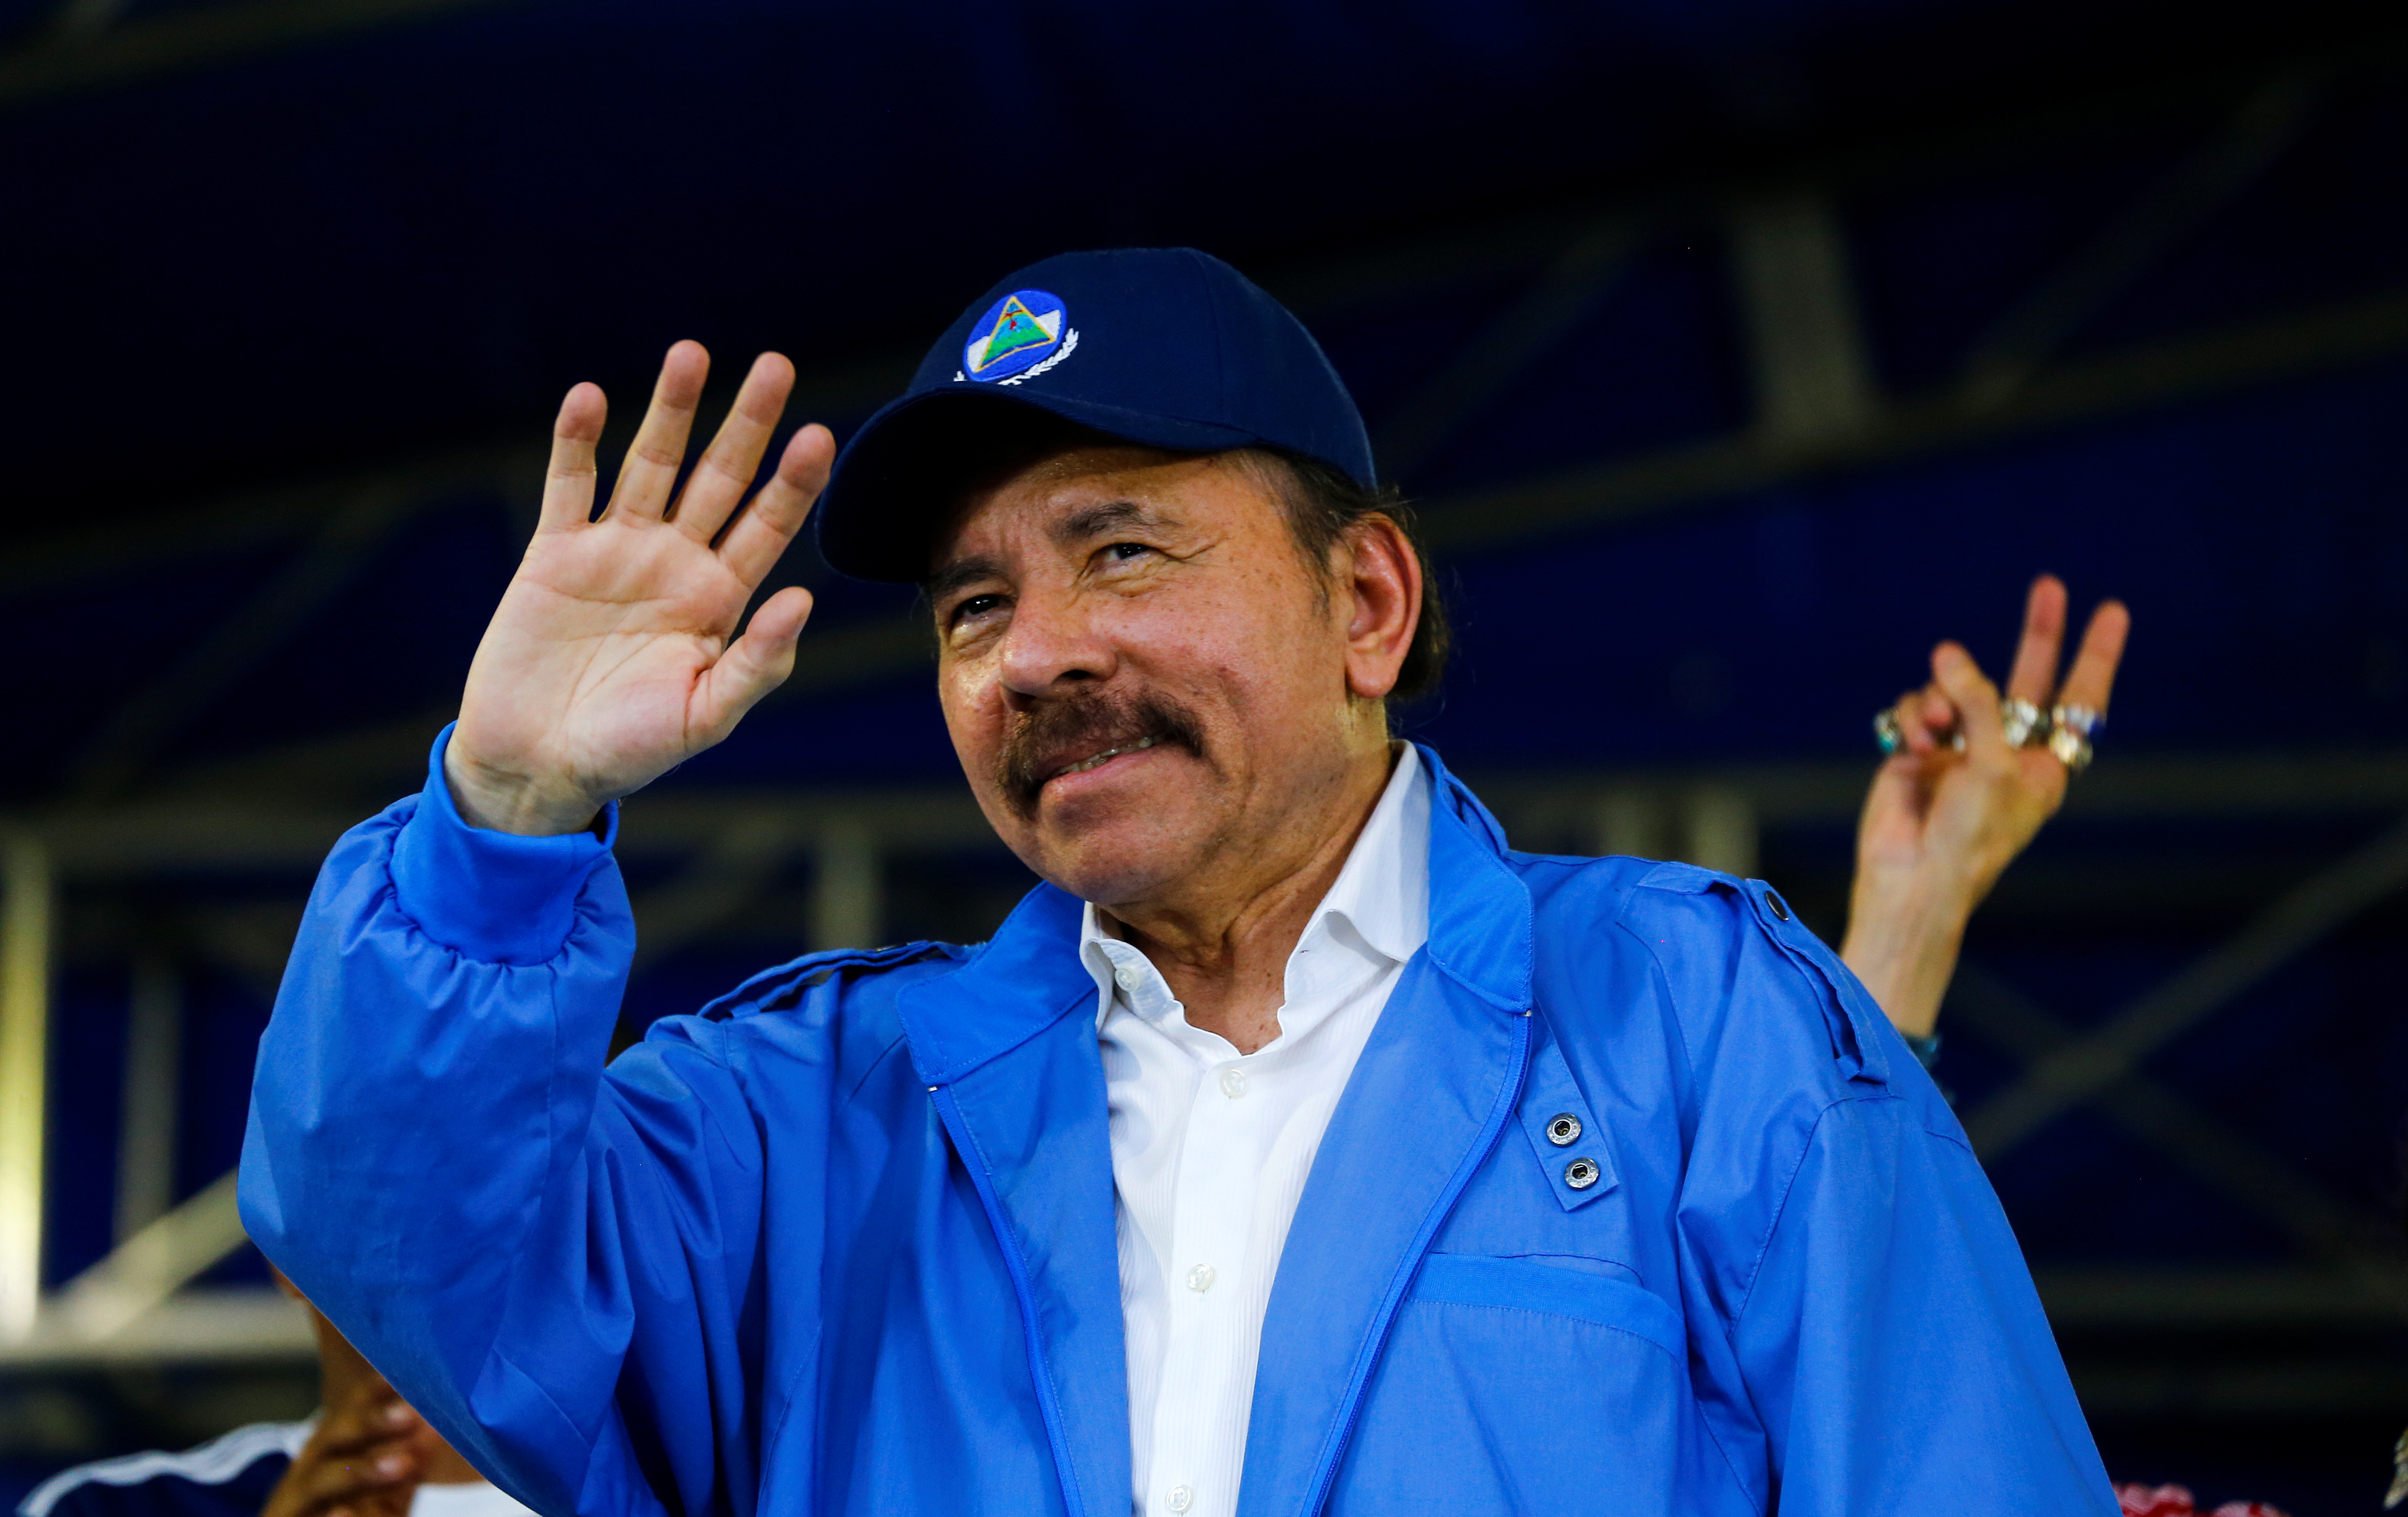 Imitando a Maduro, Ortega ordena despedir a médicos por atender a heridos en protestas